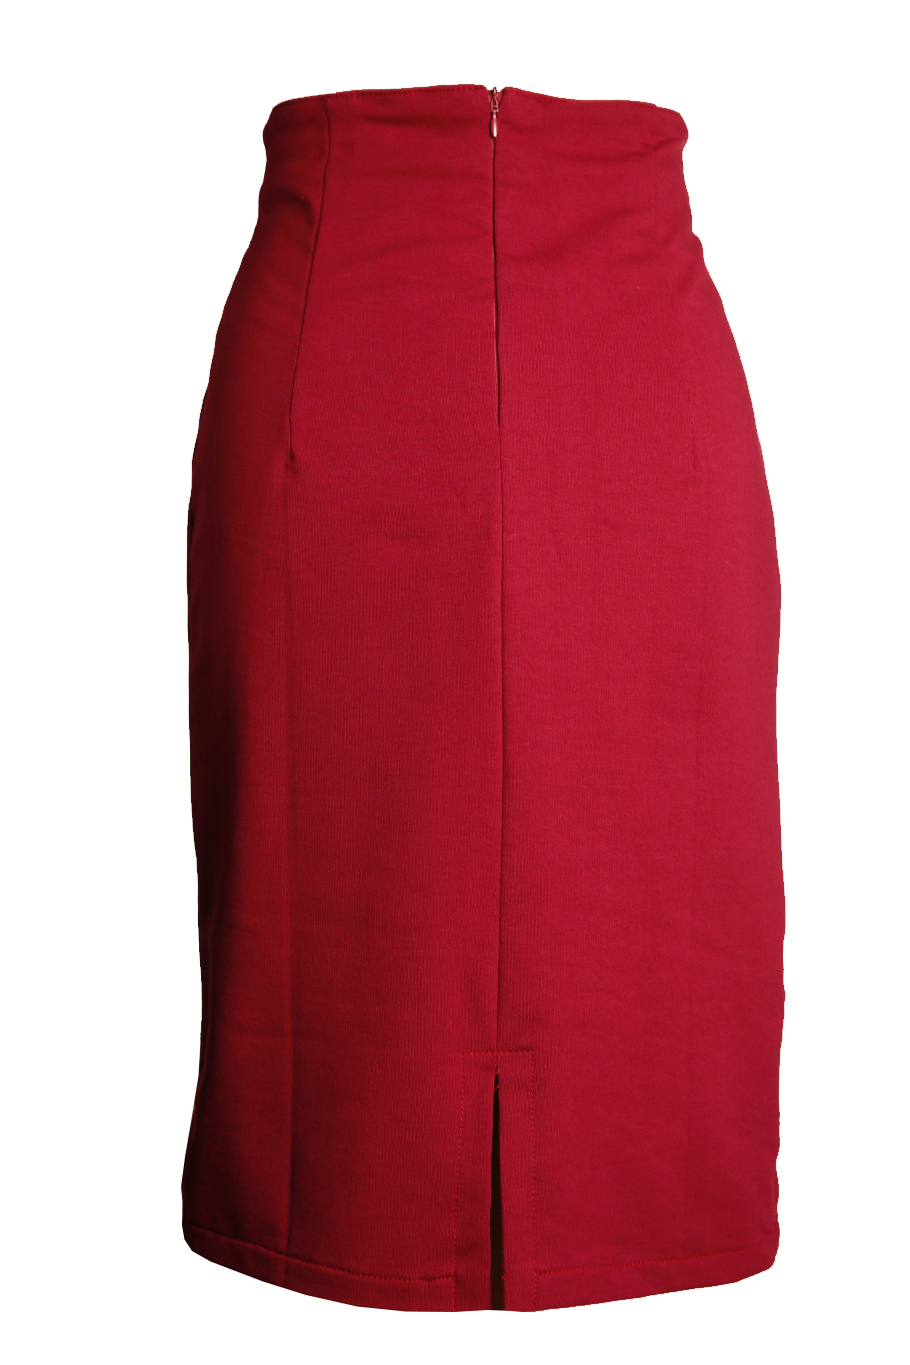 Mevrouw Romanschrijver Mam Comortabele bordeaux rode tricot high waist rok met geborduurde knal roze  bloem